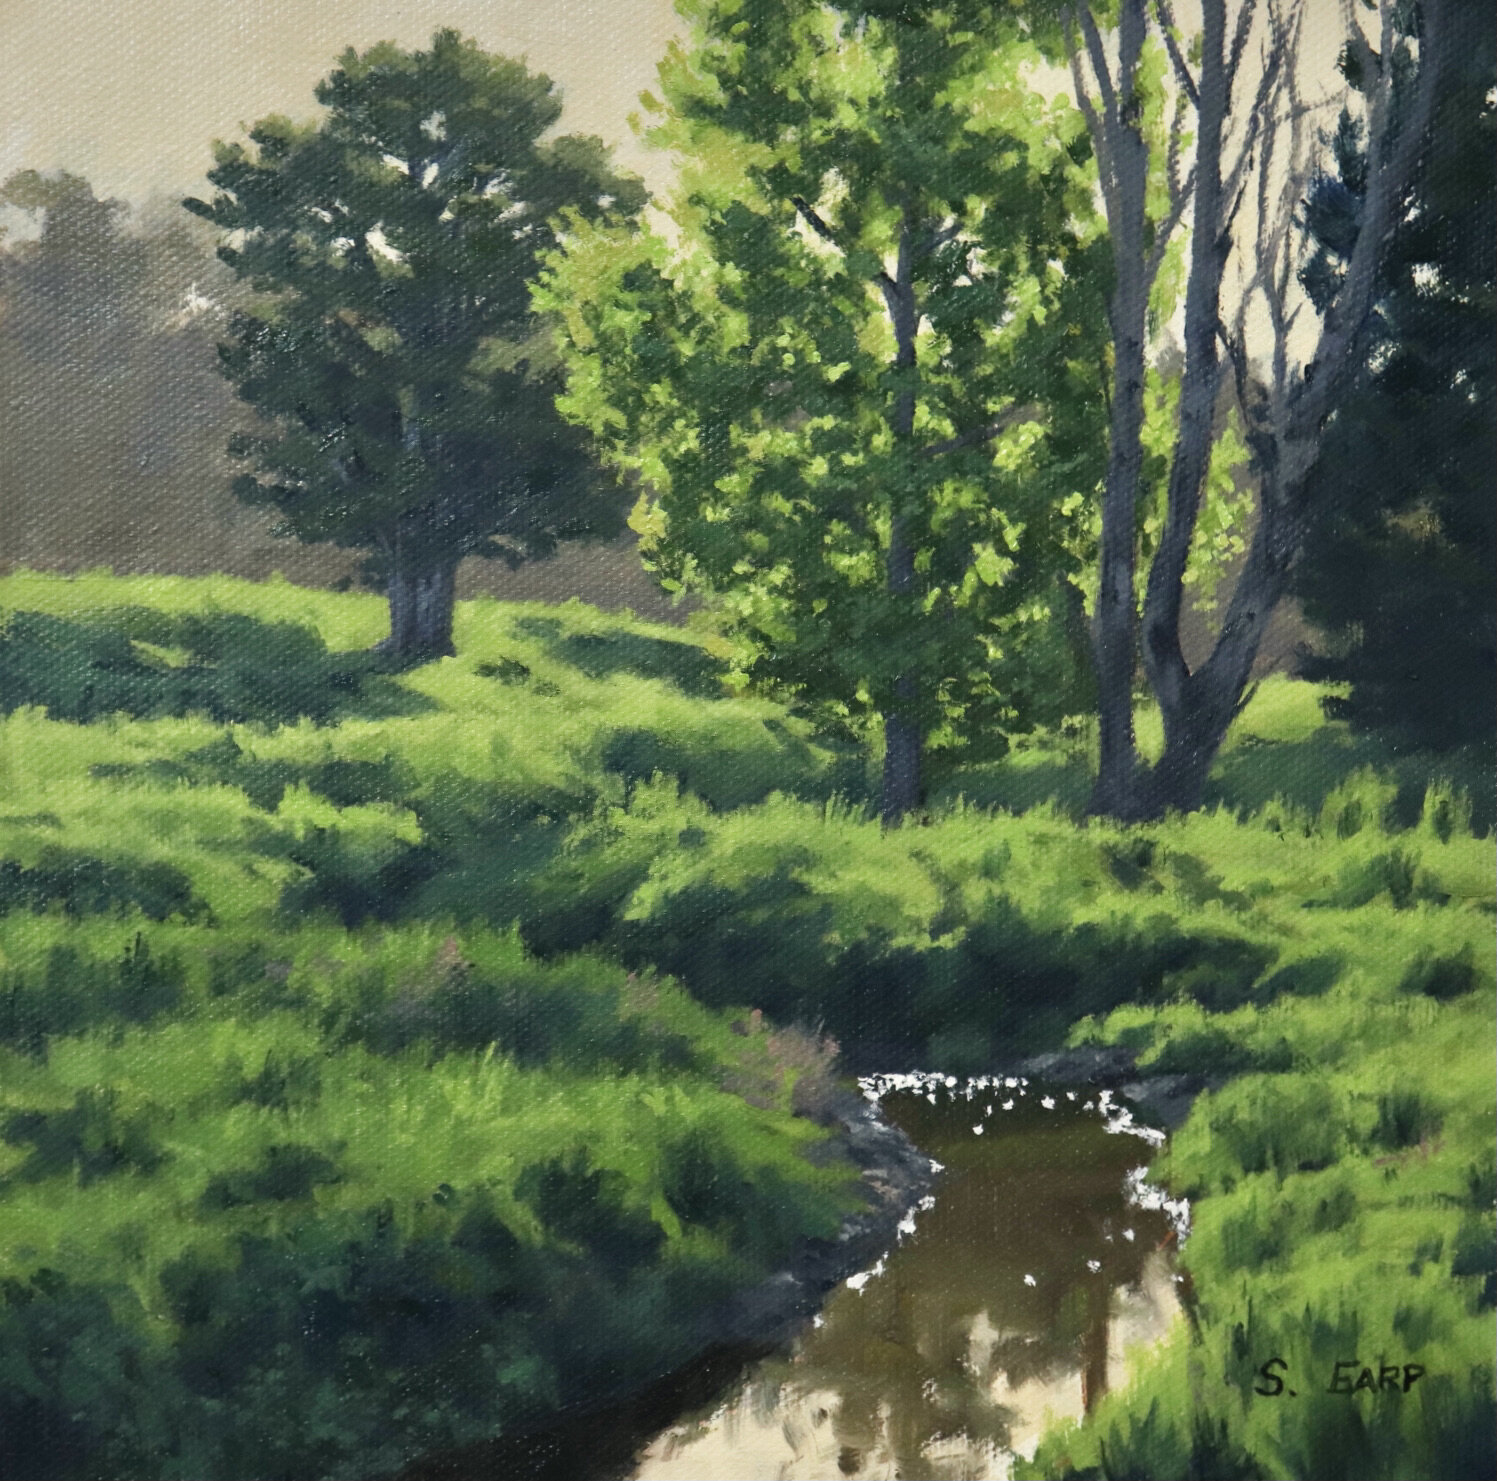 Sunlit Trees - Samuel Earp - oil painting.JPG